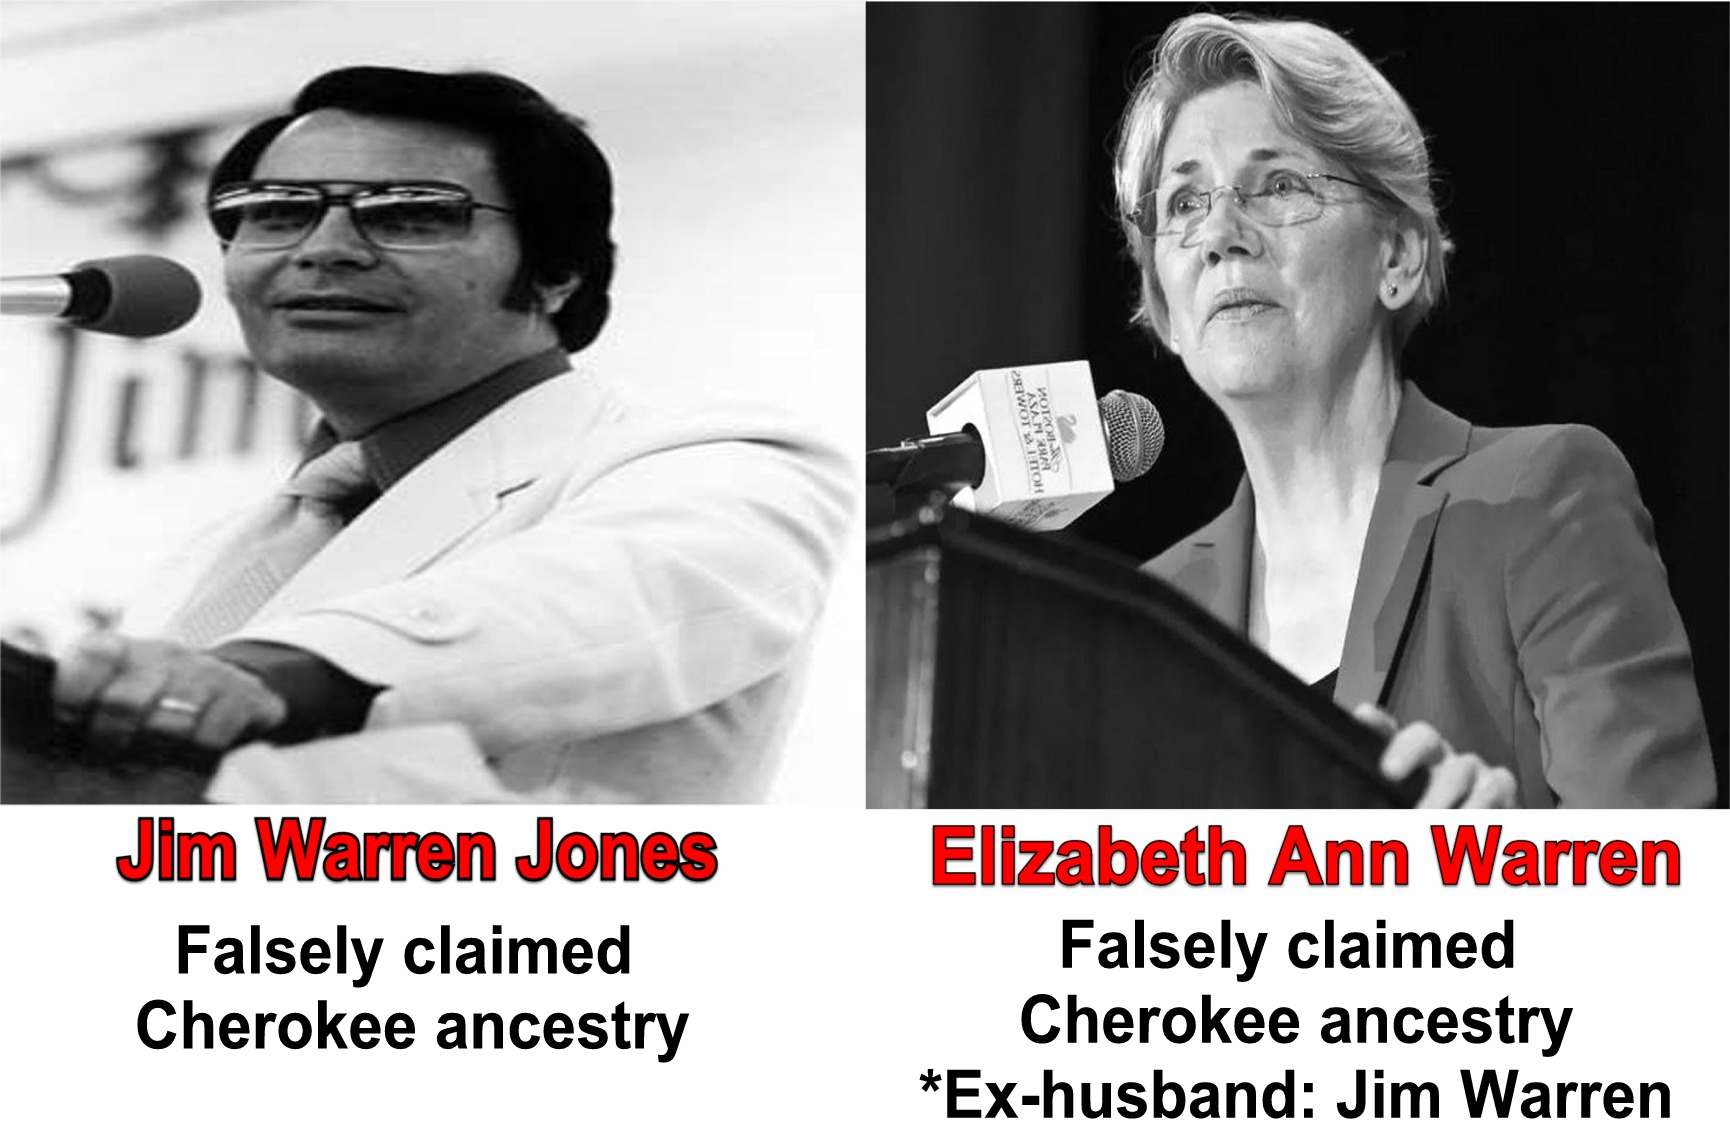 human behavior - 298WOTI Toh Asan Votzone Jim Warren Jones Falsely claimed Cherokee ancestry Elizabeth Ann Warren Falsely claimed Cherokee ancestry Exhusband Jim Warren